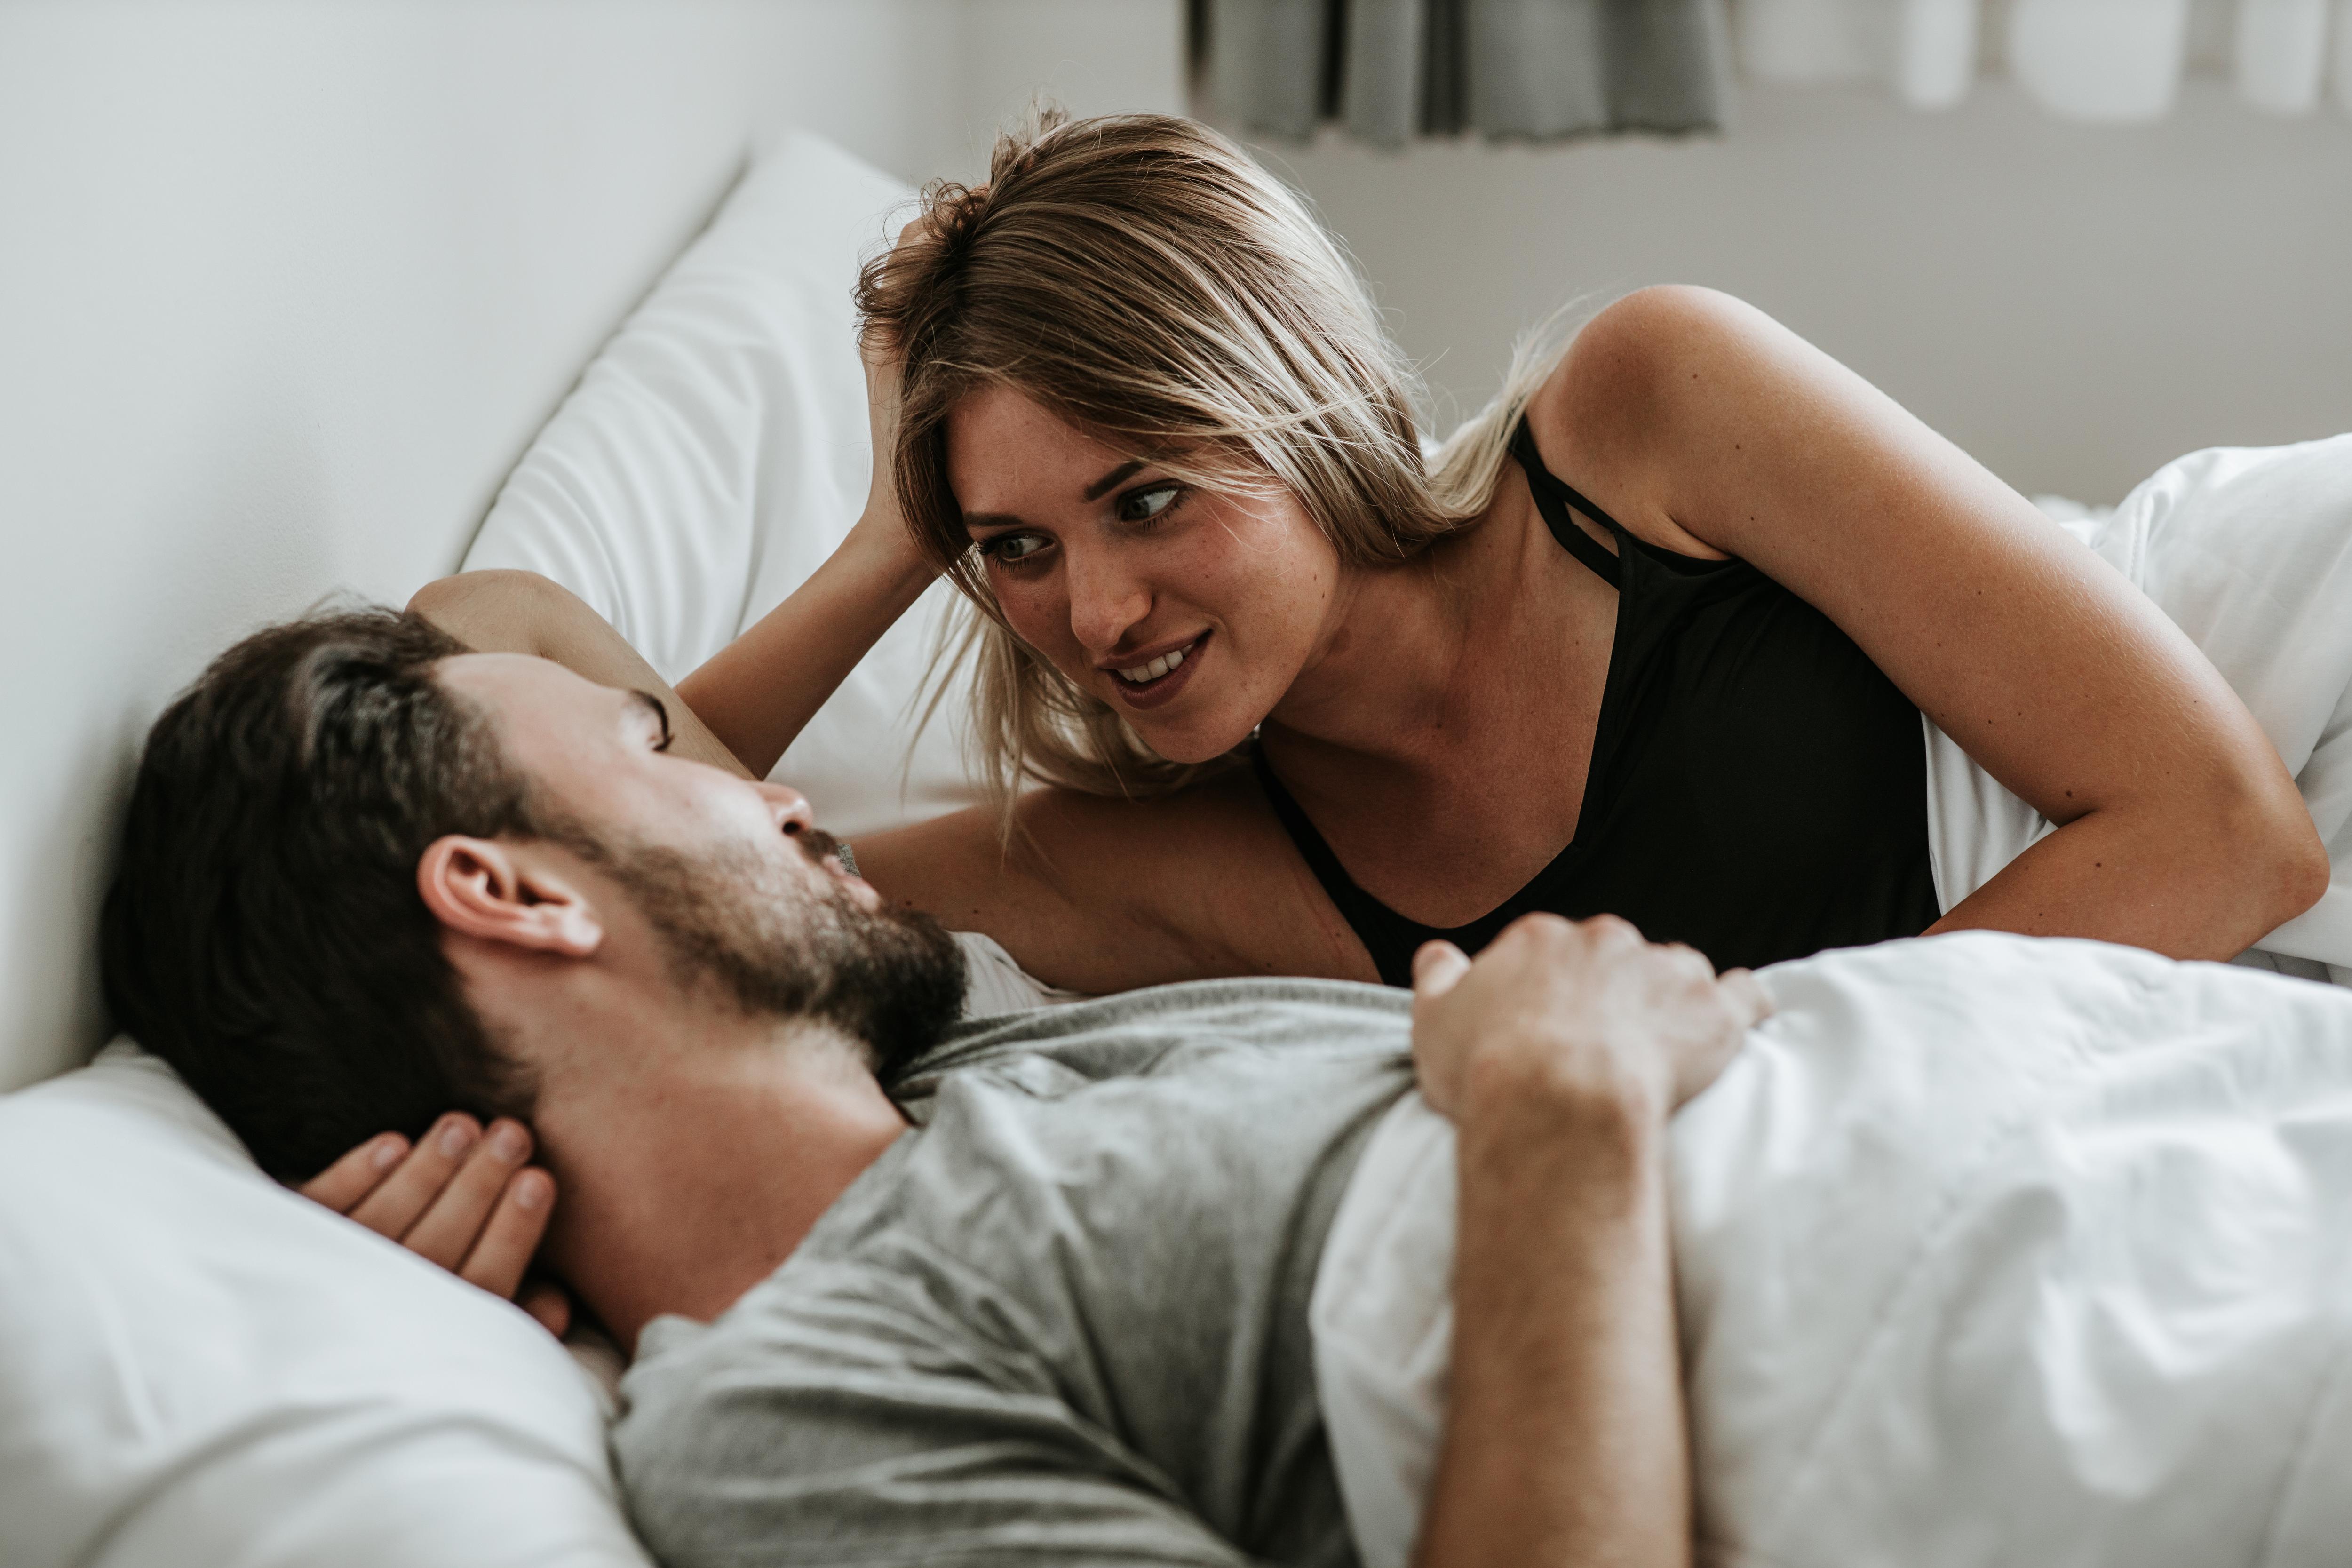 Почему мужчины любят секс во время месячных? - ответа на форуме city-lawyers.ru ()